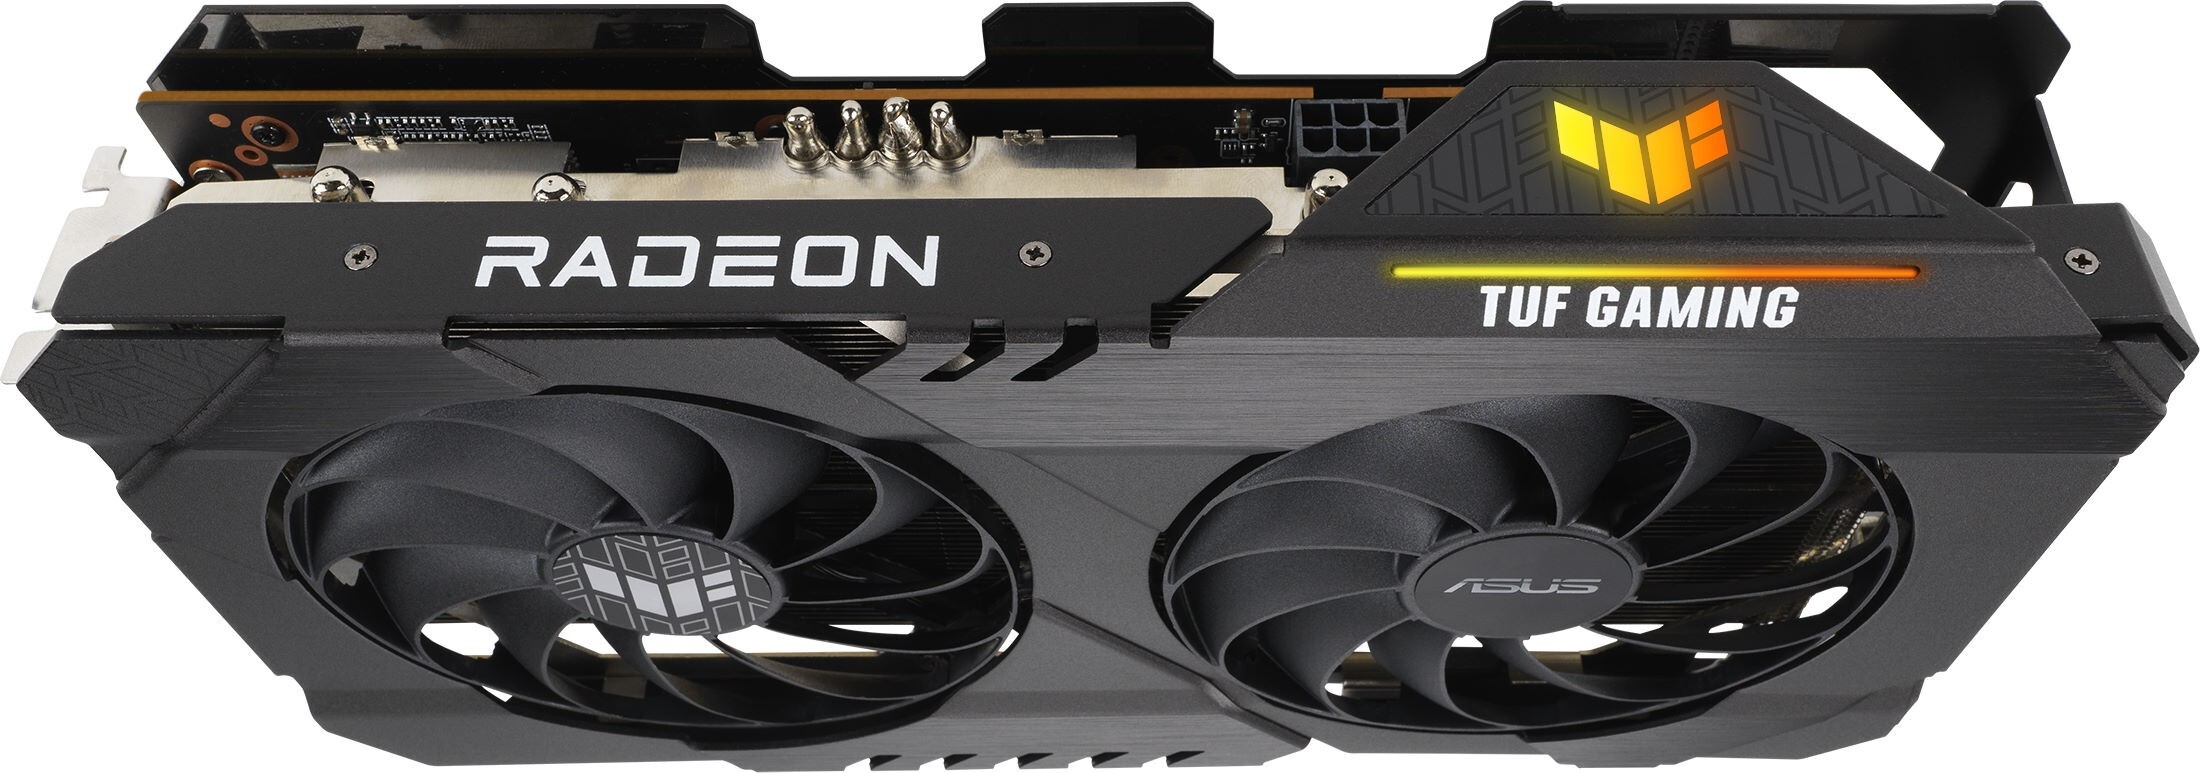 ASUS Radeon RX 6500 XT 4GB GDDR6 64bit TUF Gaming OC / TUF-RX6500XT-O4G-GAMING